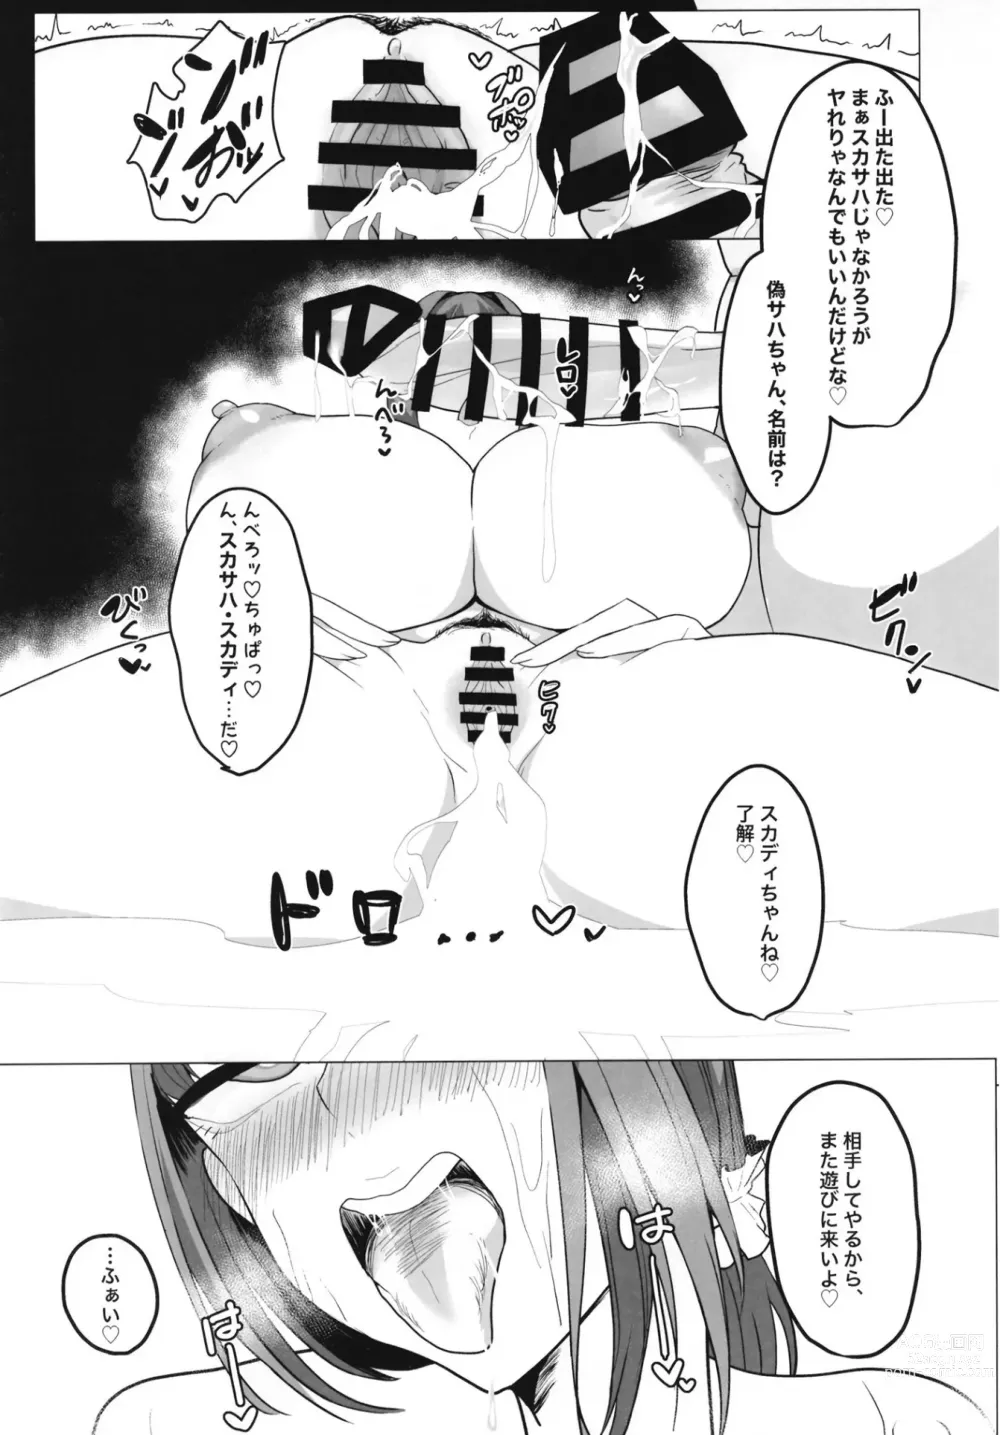 Page 18 of doujinshi Mizugi Skadi, Charao to Yaru.